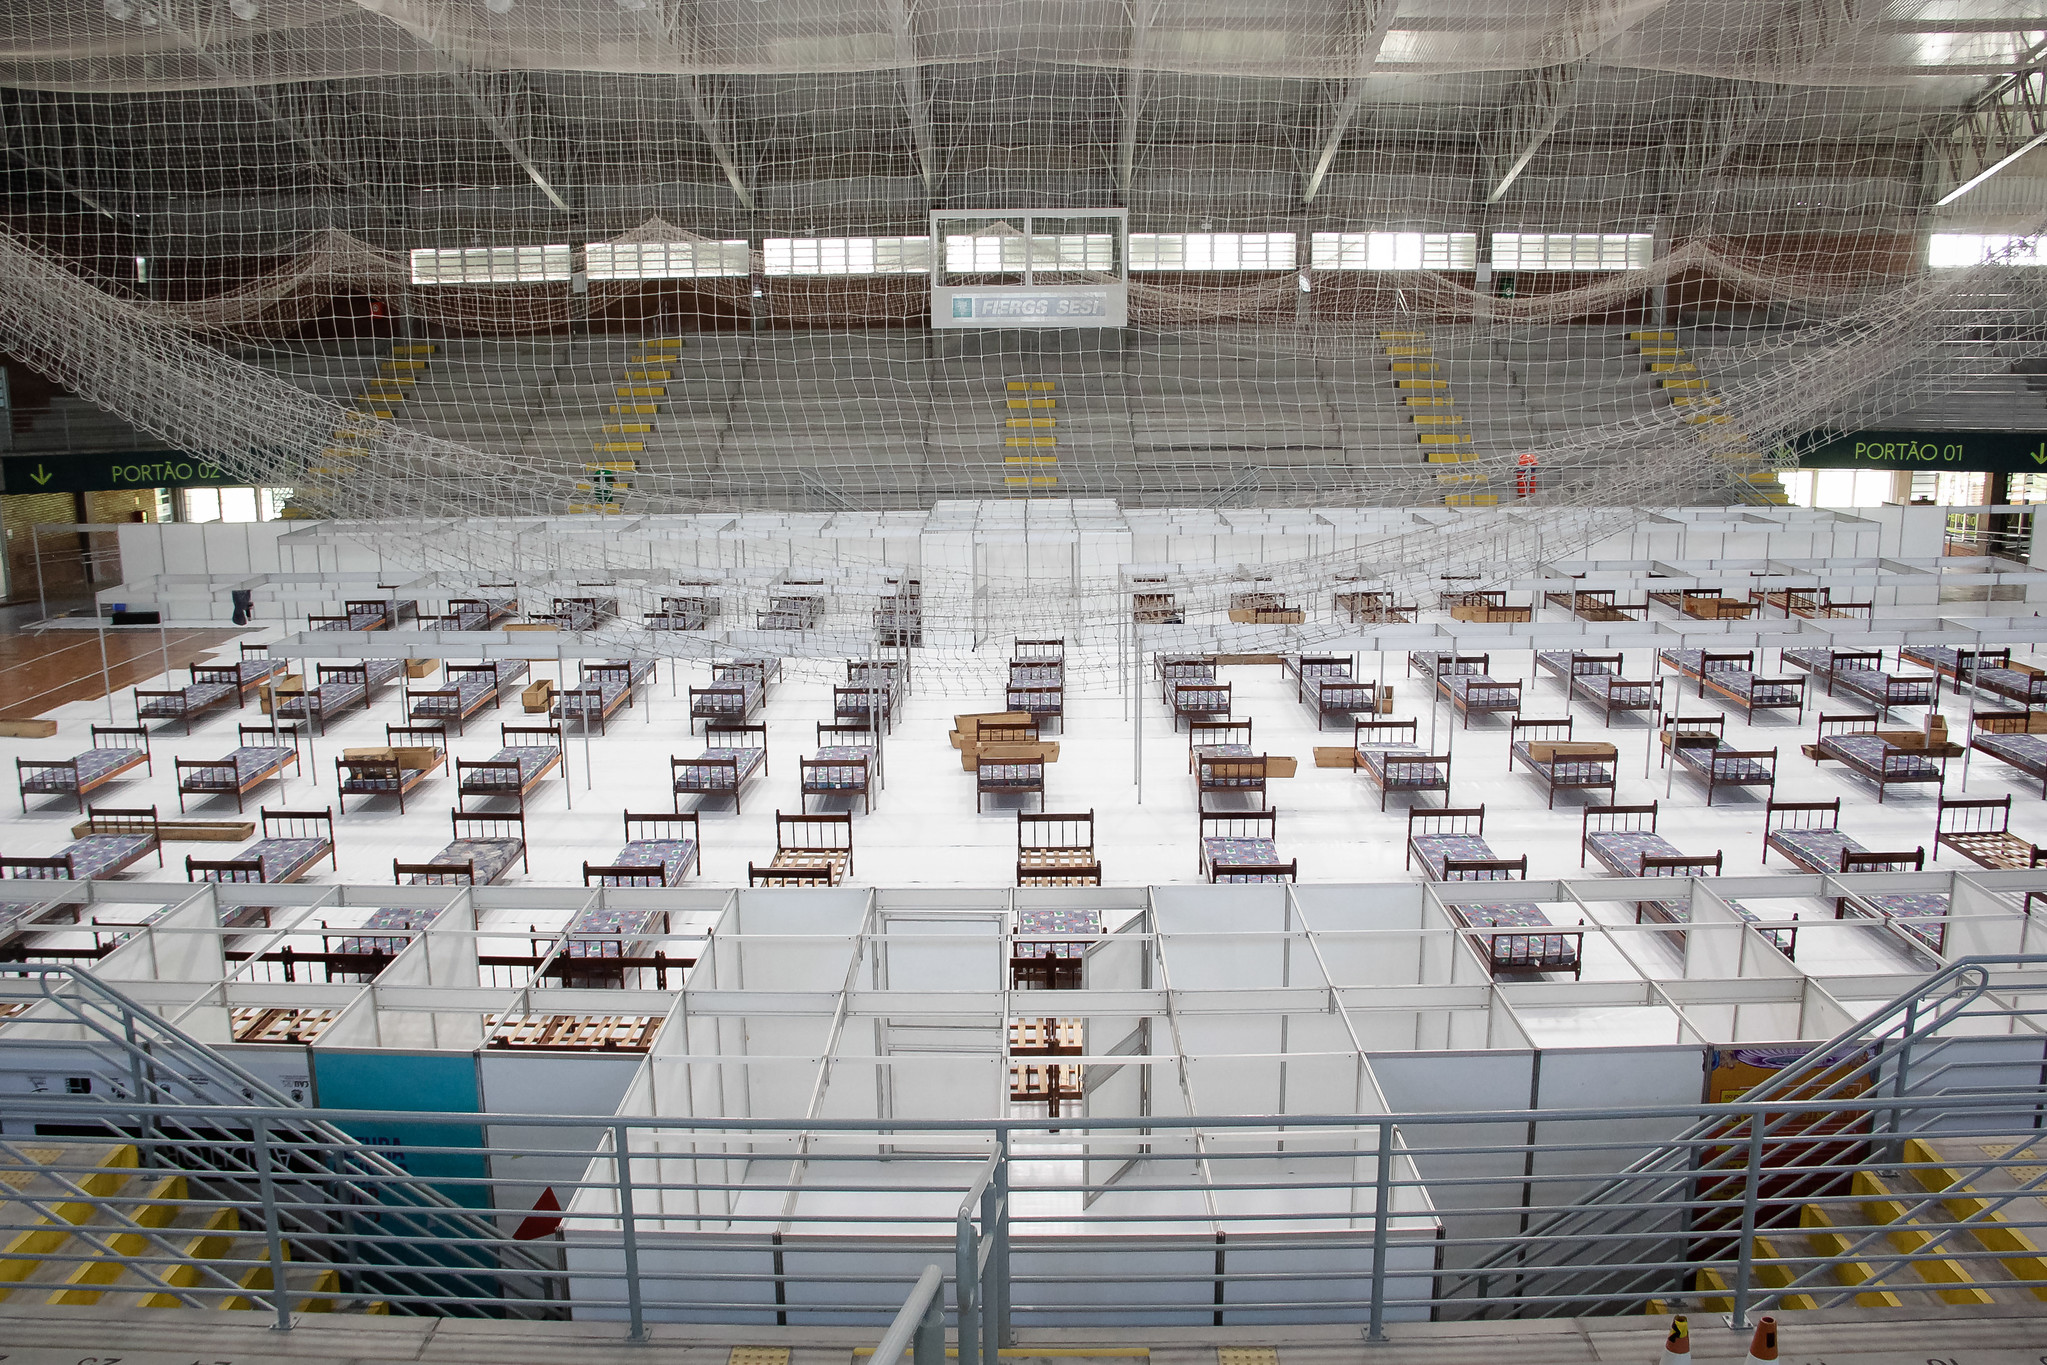 
Preparation of a field hospital at the Sesi gymnasium in Pelotas, Rio Grande do Sul (Photo: Rodrigo Chagas)